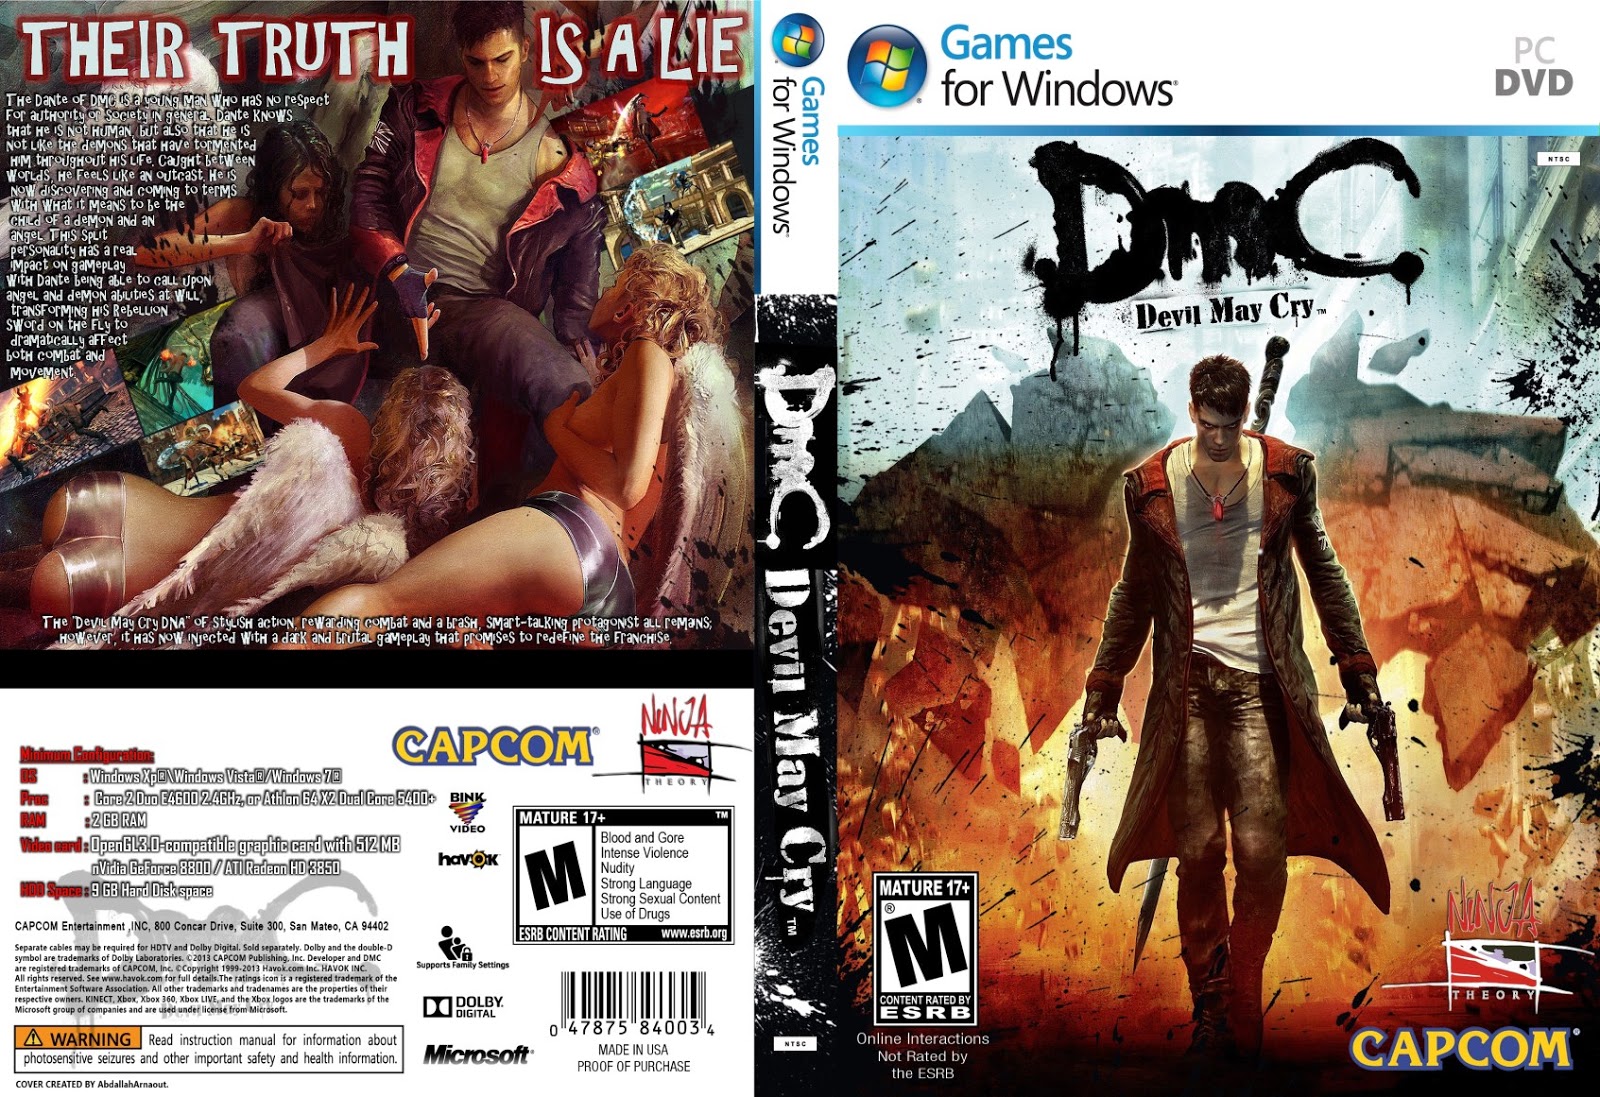 Devil May Cry 5 - Requisitos Mínimos e Recomendados para PC 